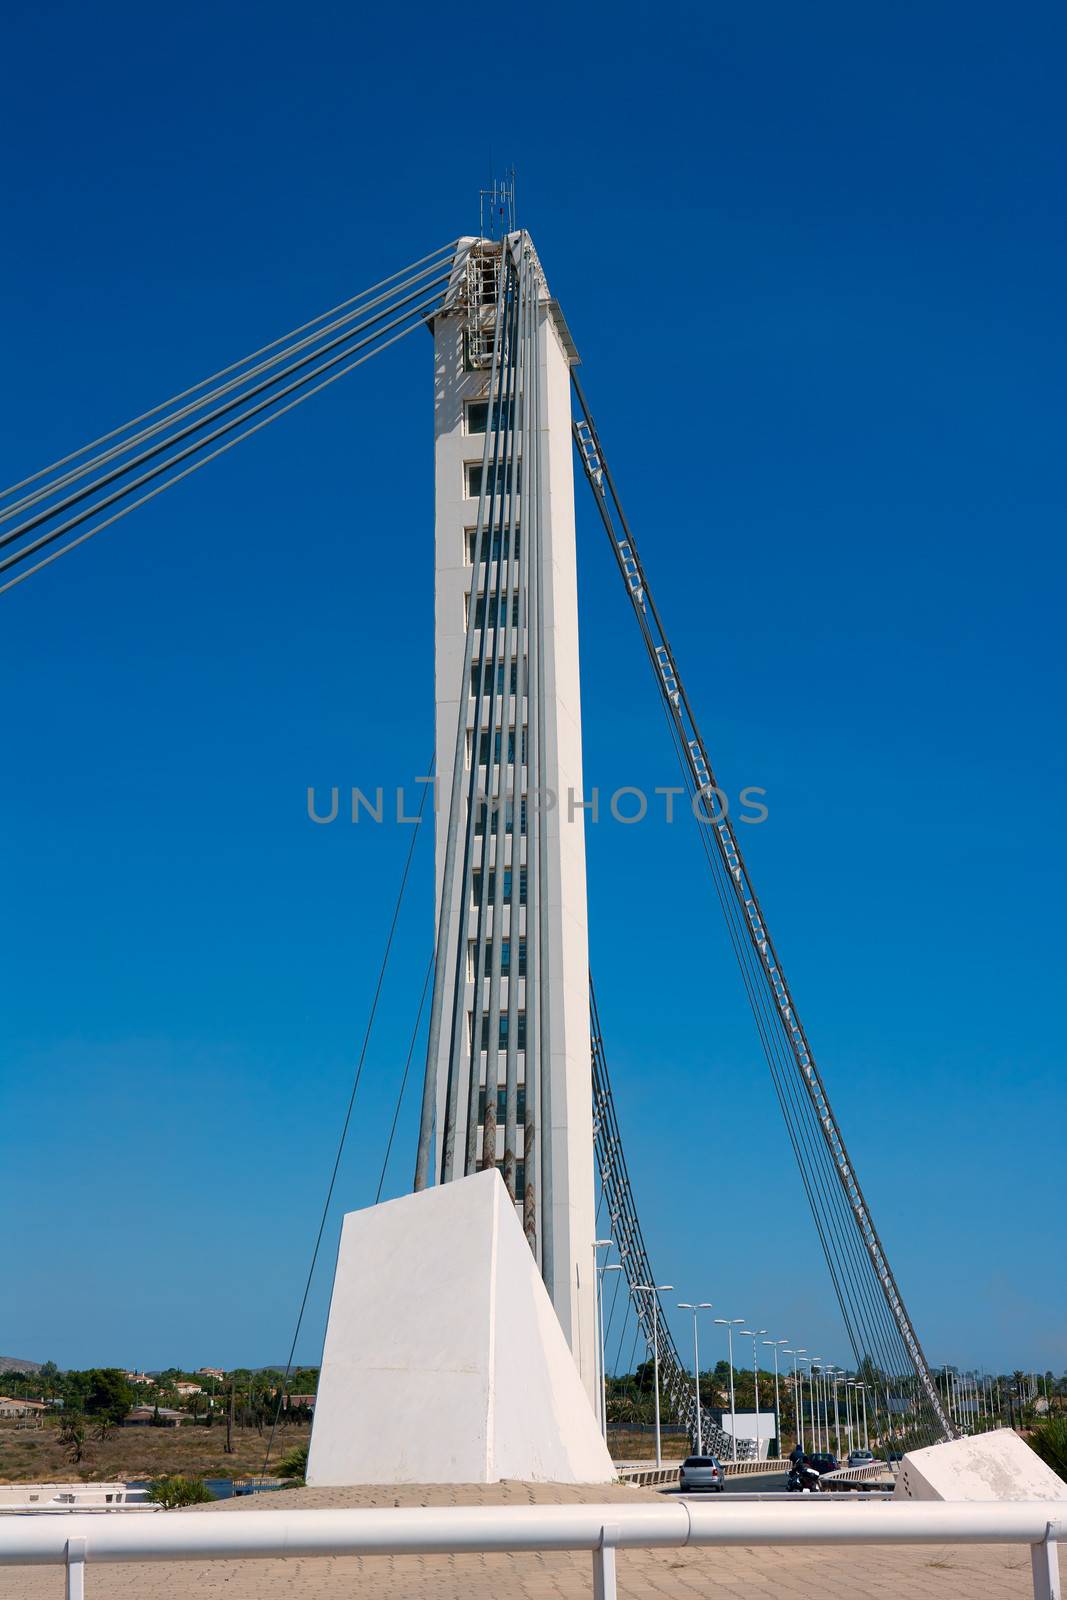 Elche Alicante Bimilenario suspension bridge over Vinalopo by lunamarina